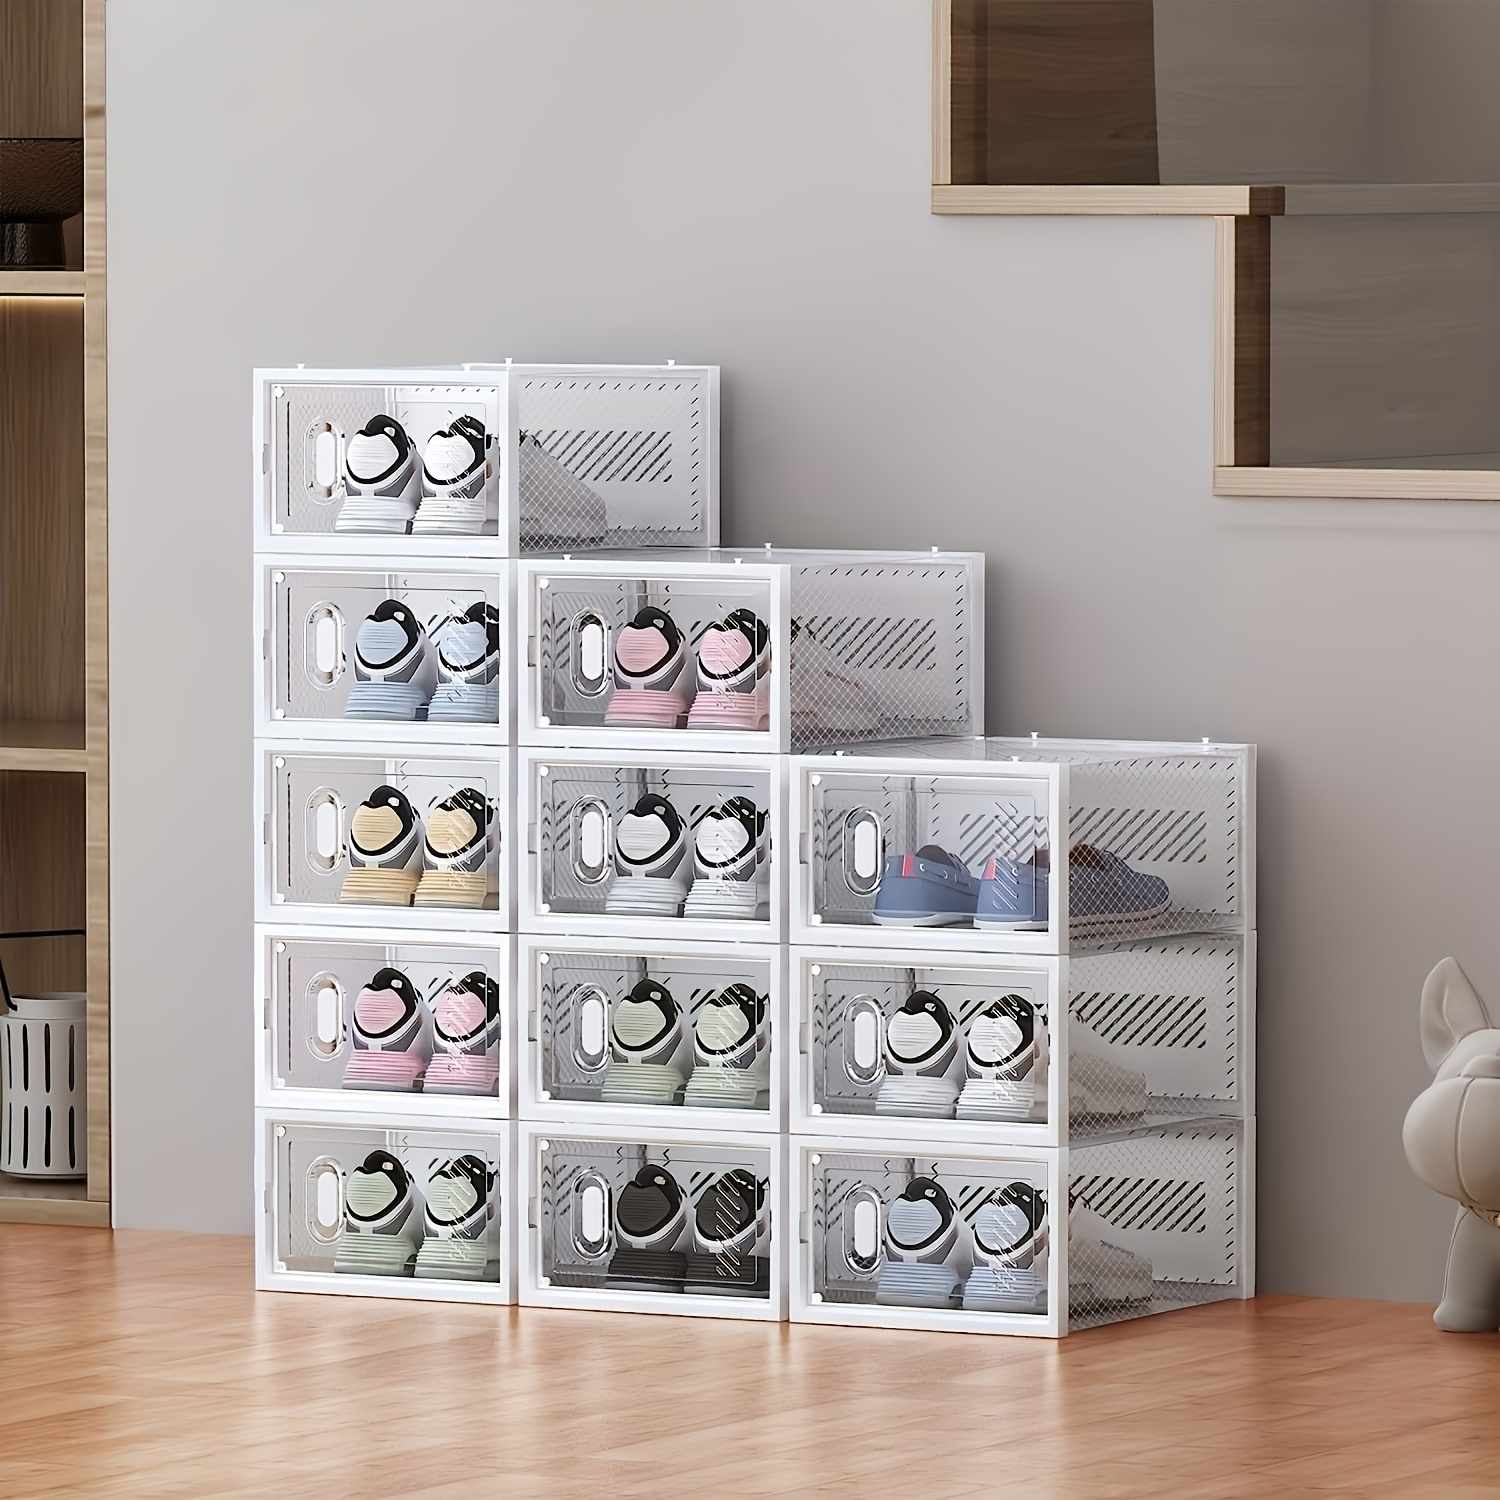 Cajas Organizadoras De Zapatos Transparente 12 Piezas Homeasy Moderno